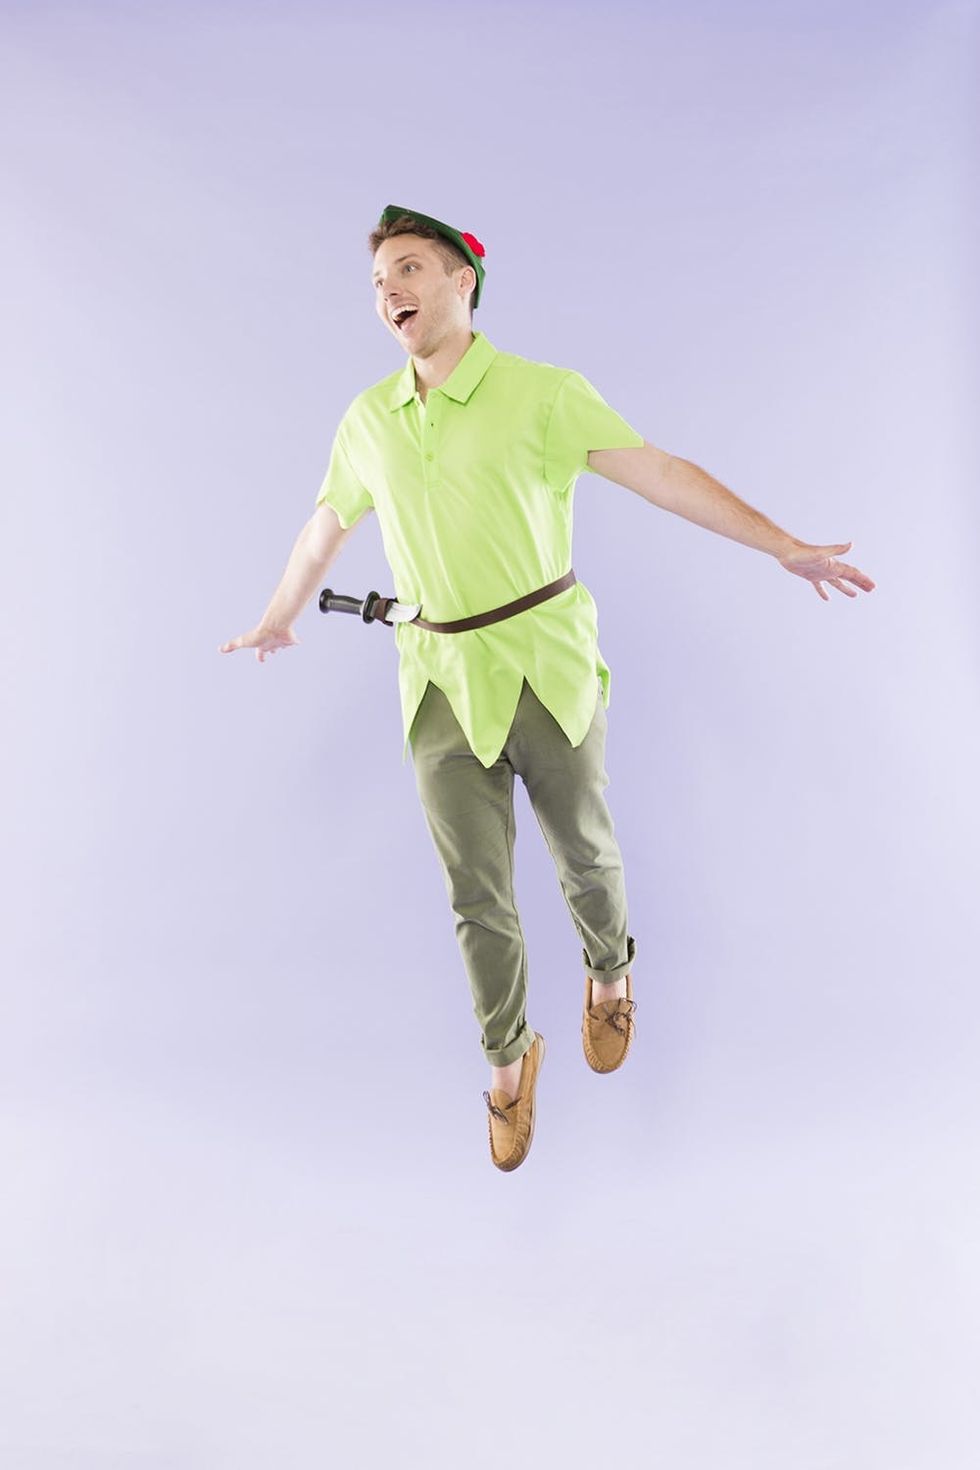 Peter Pan costume